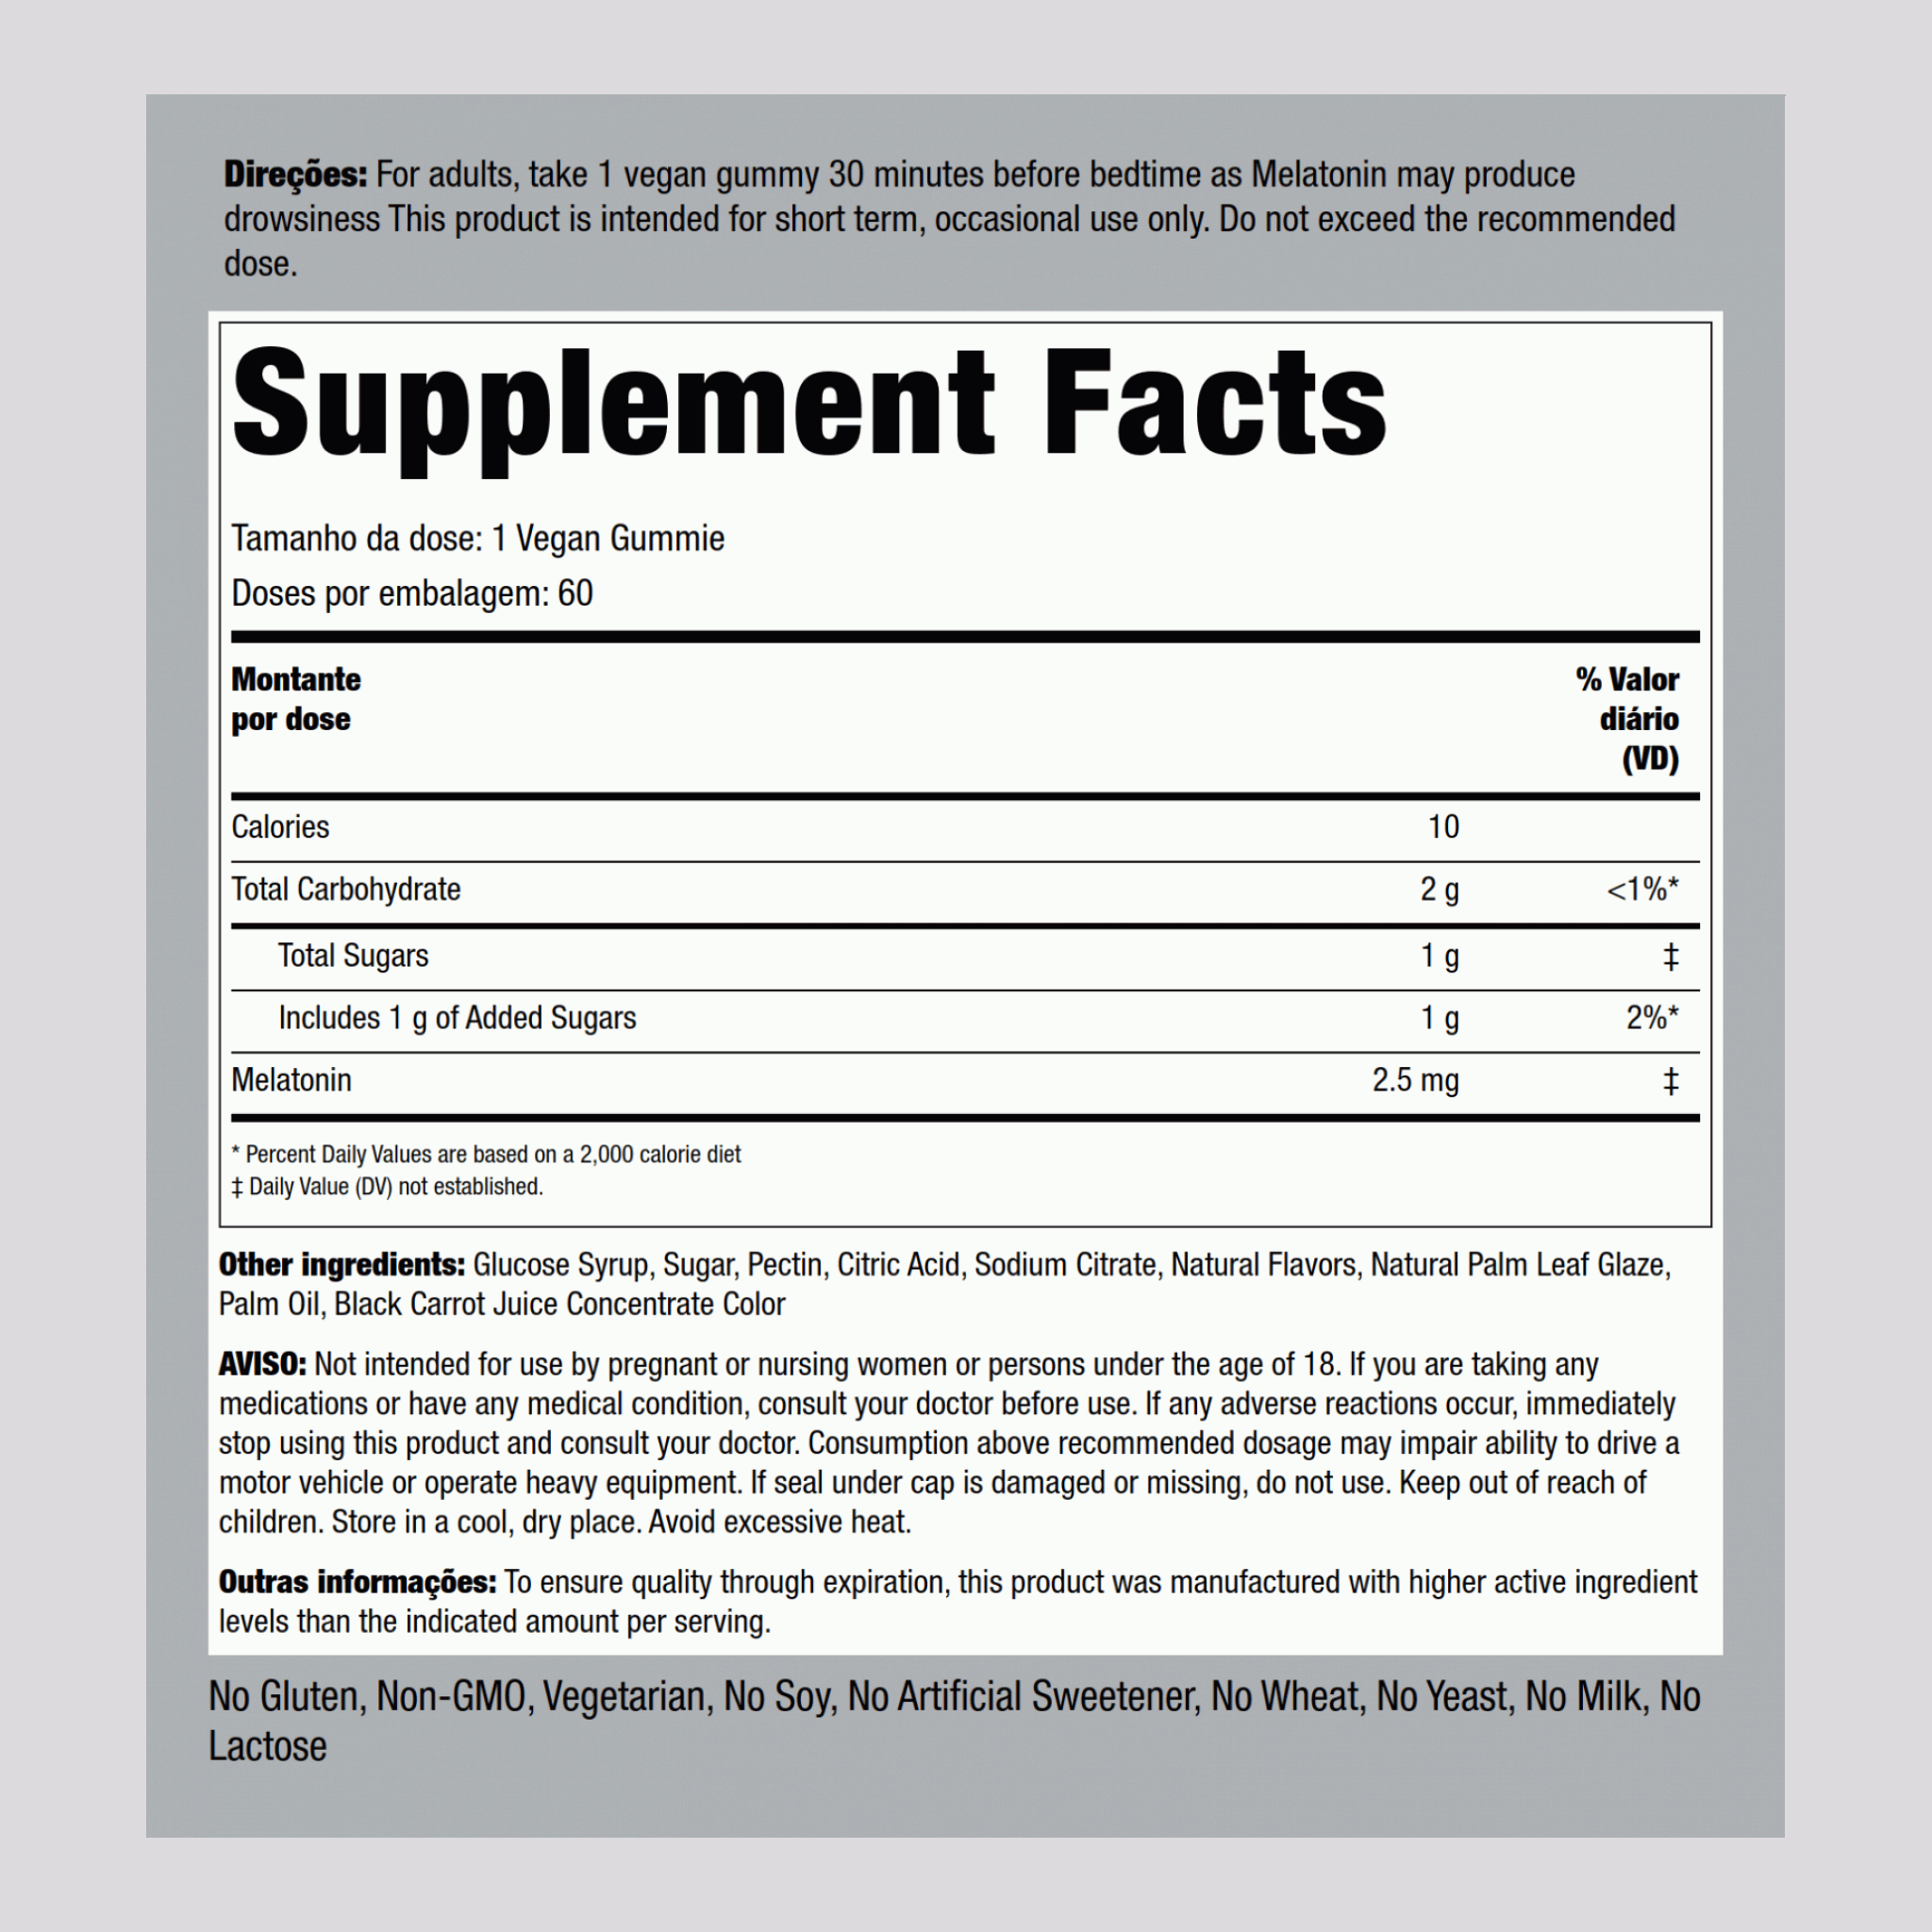 Mélatonine (baies naturelles),  2.5 mg 60 Gommes végans